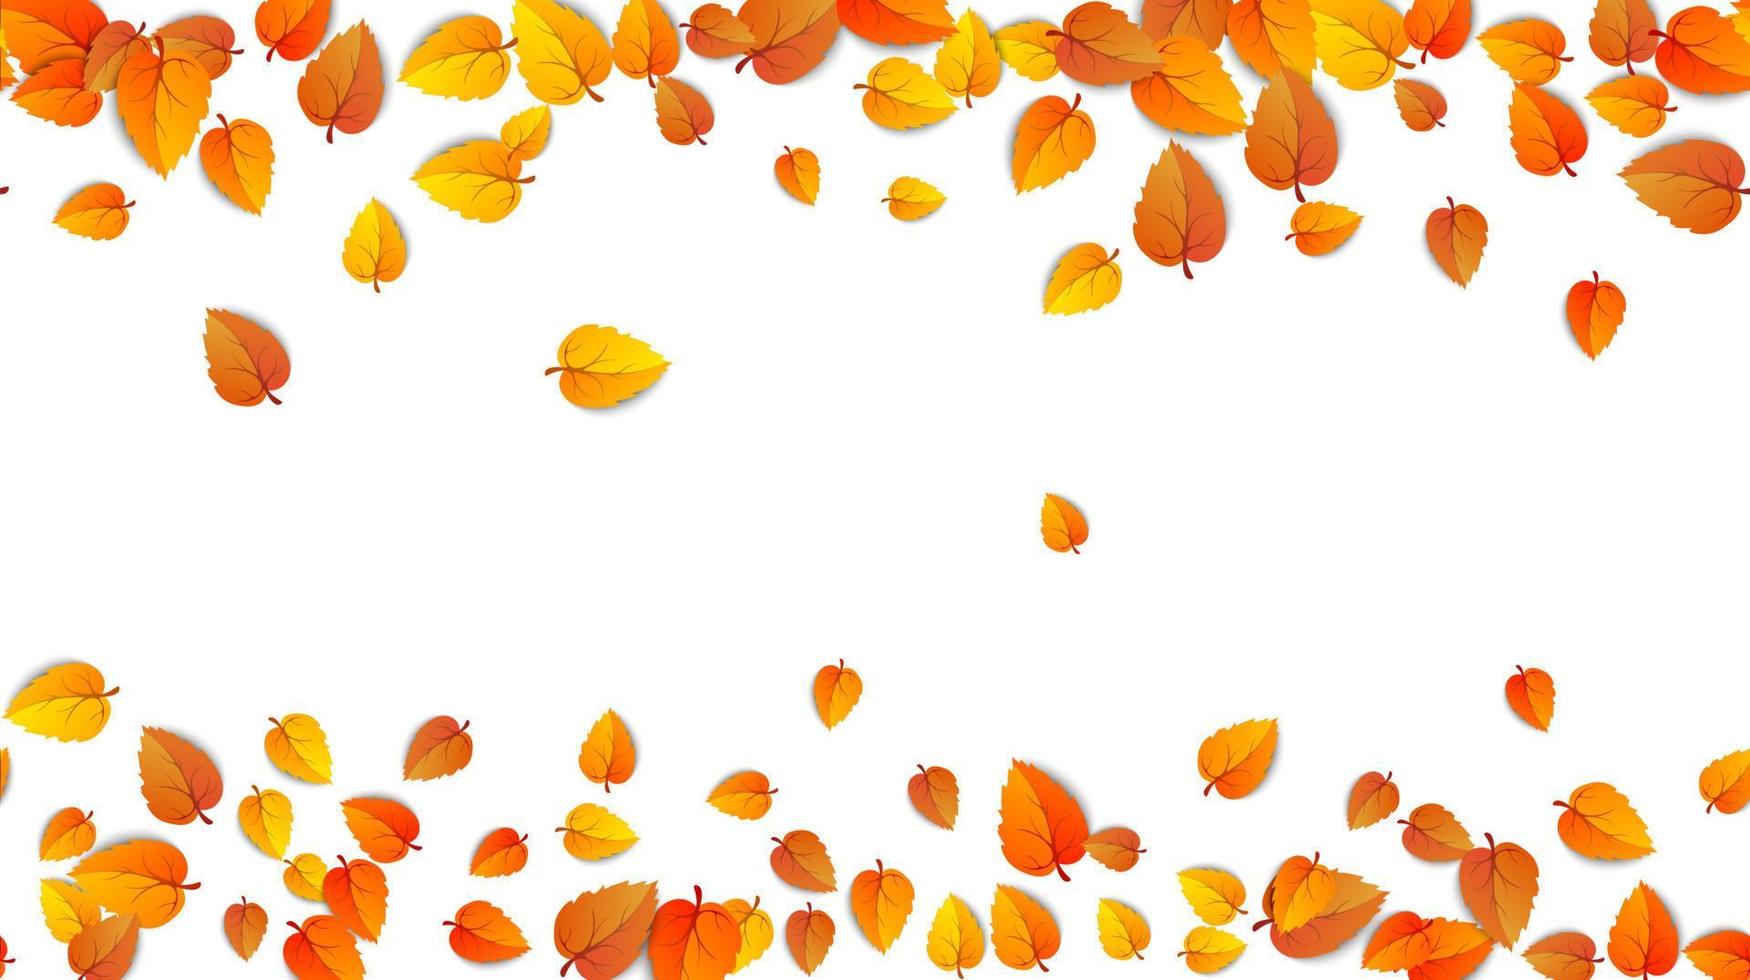 nahtlose Herbstlaub horizontale Banner isoliert auf weißem Hintergrund. Werbevorlage mit goldenem Herbstblatt. Farbenmuster der Herbstsaison. herbstlicher naturlaubtapetenrahmen. Vektor